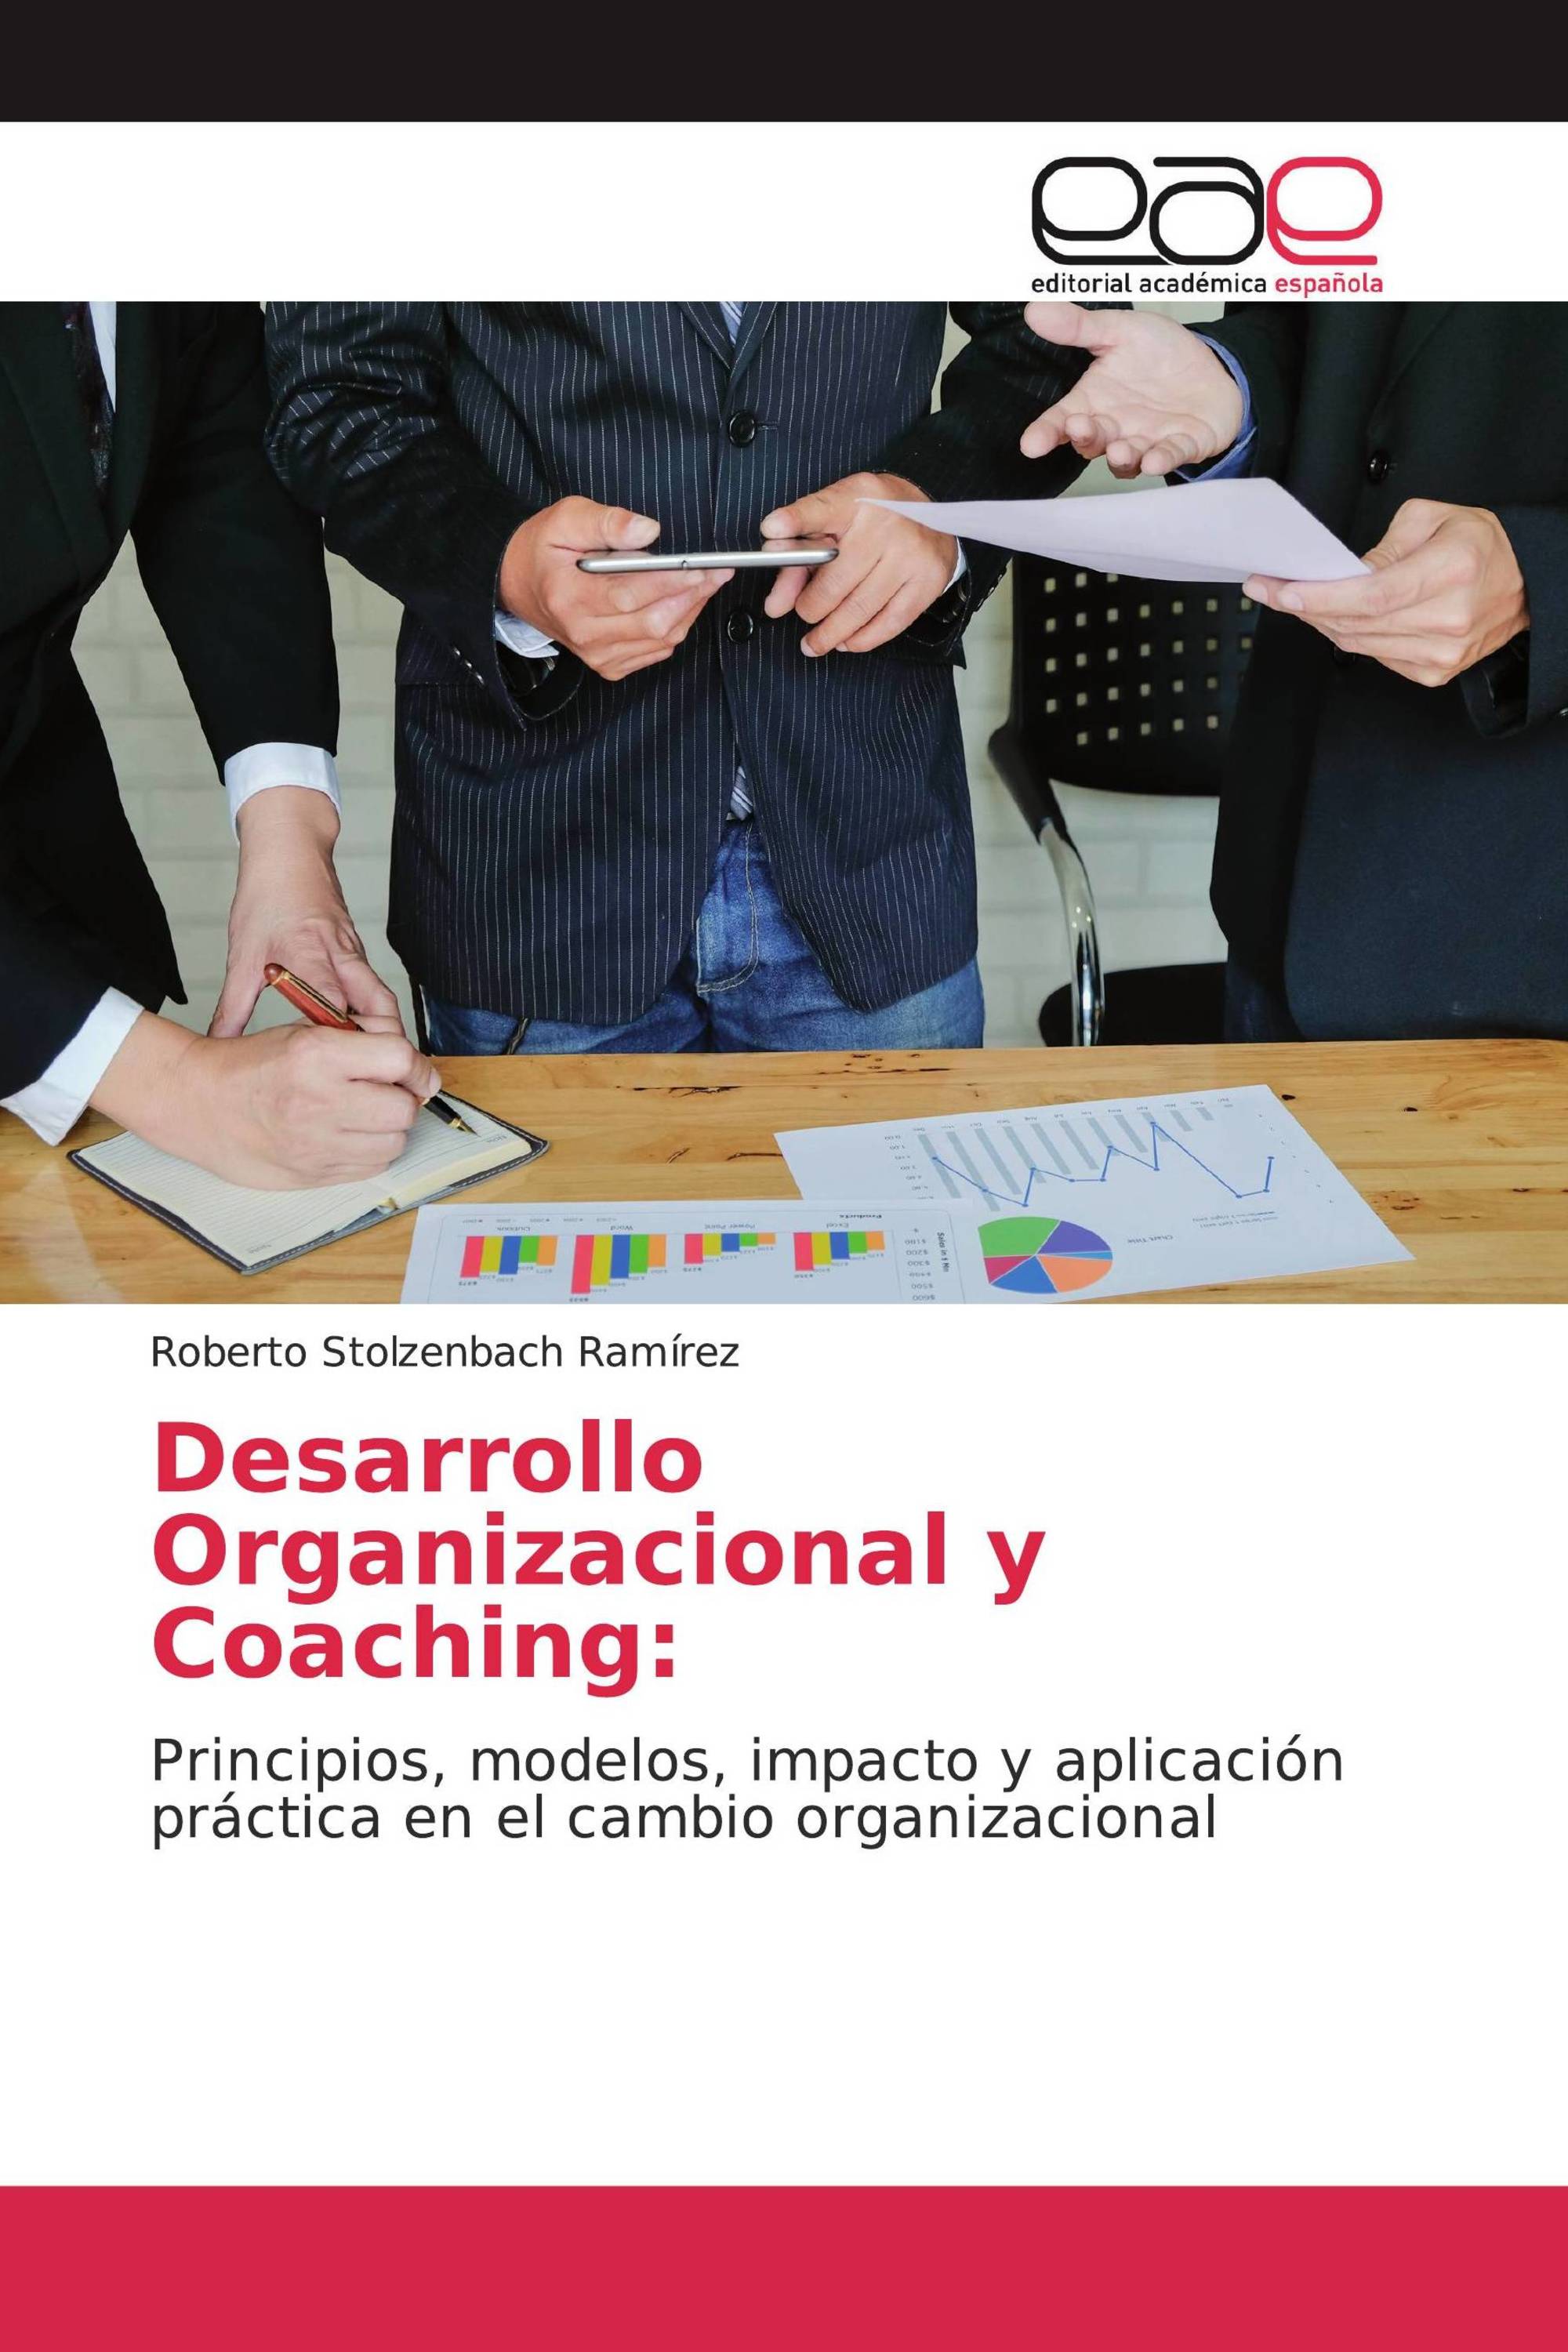 tesis de coaching organizacional